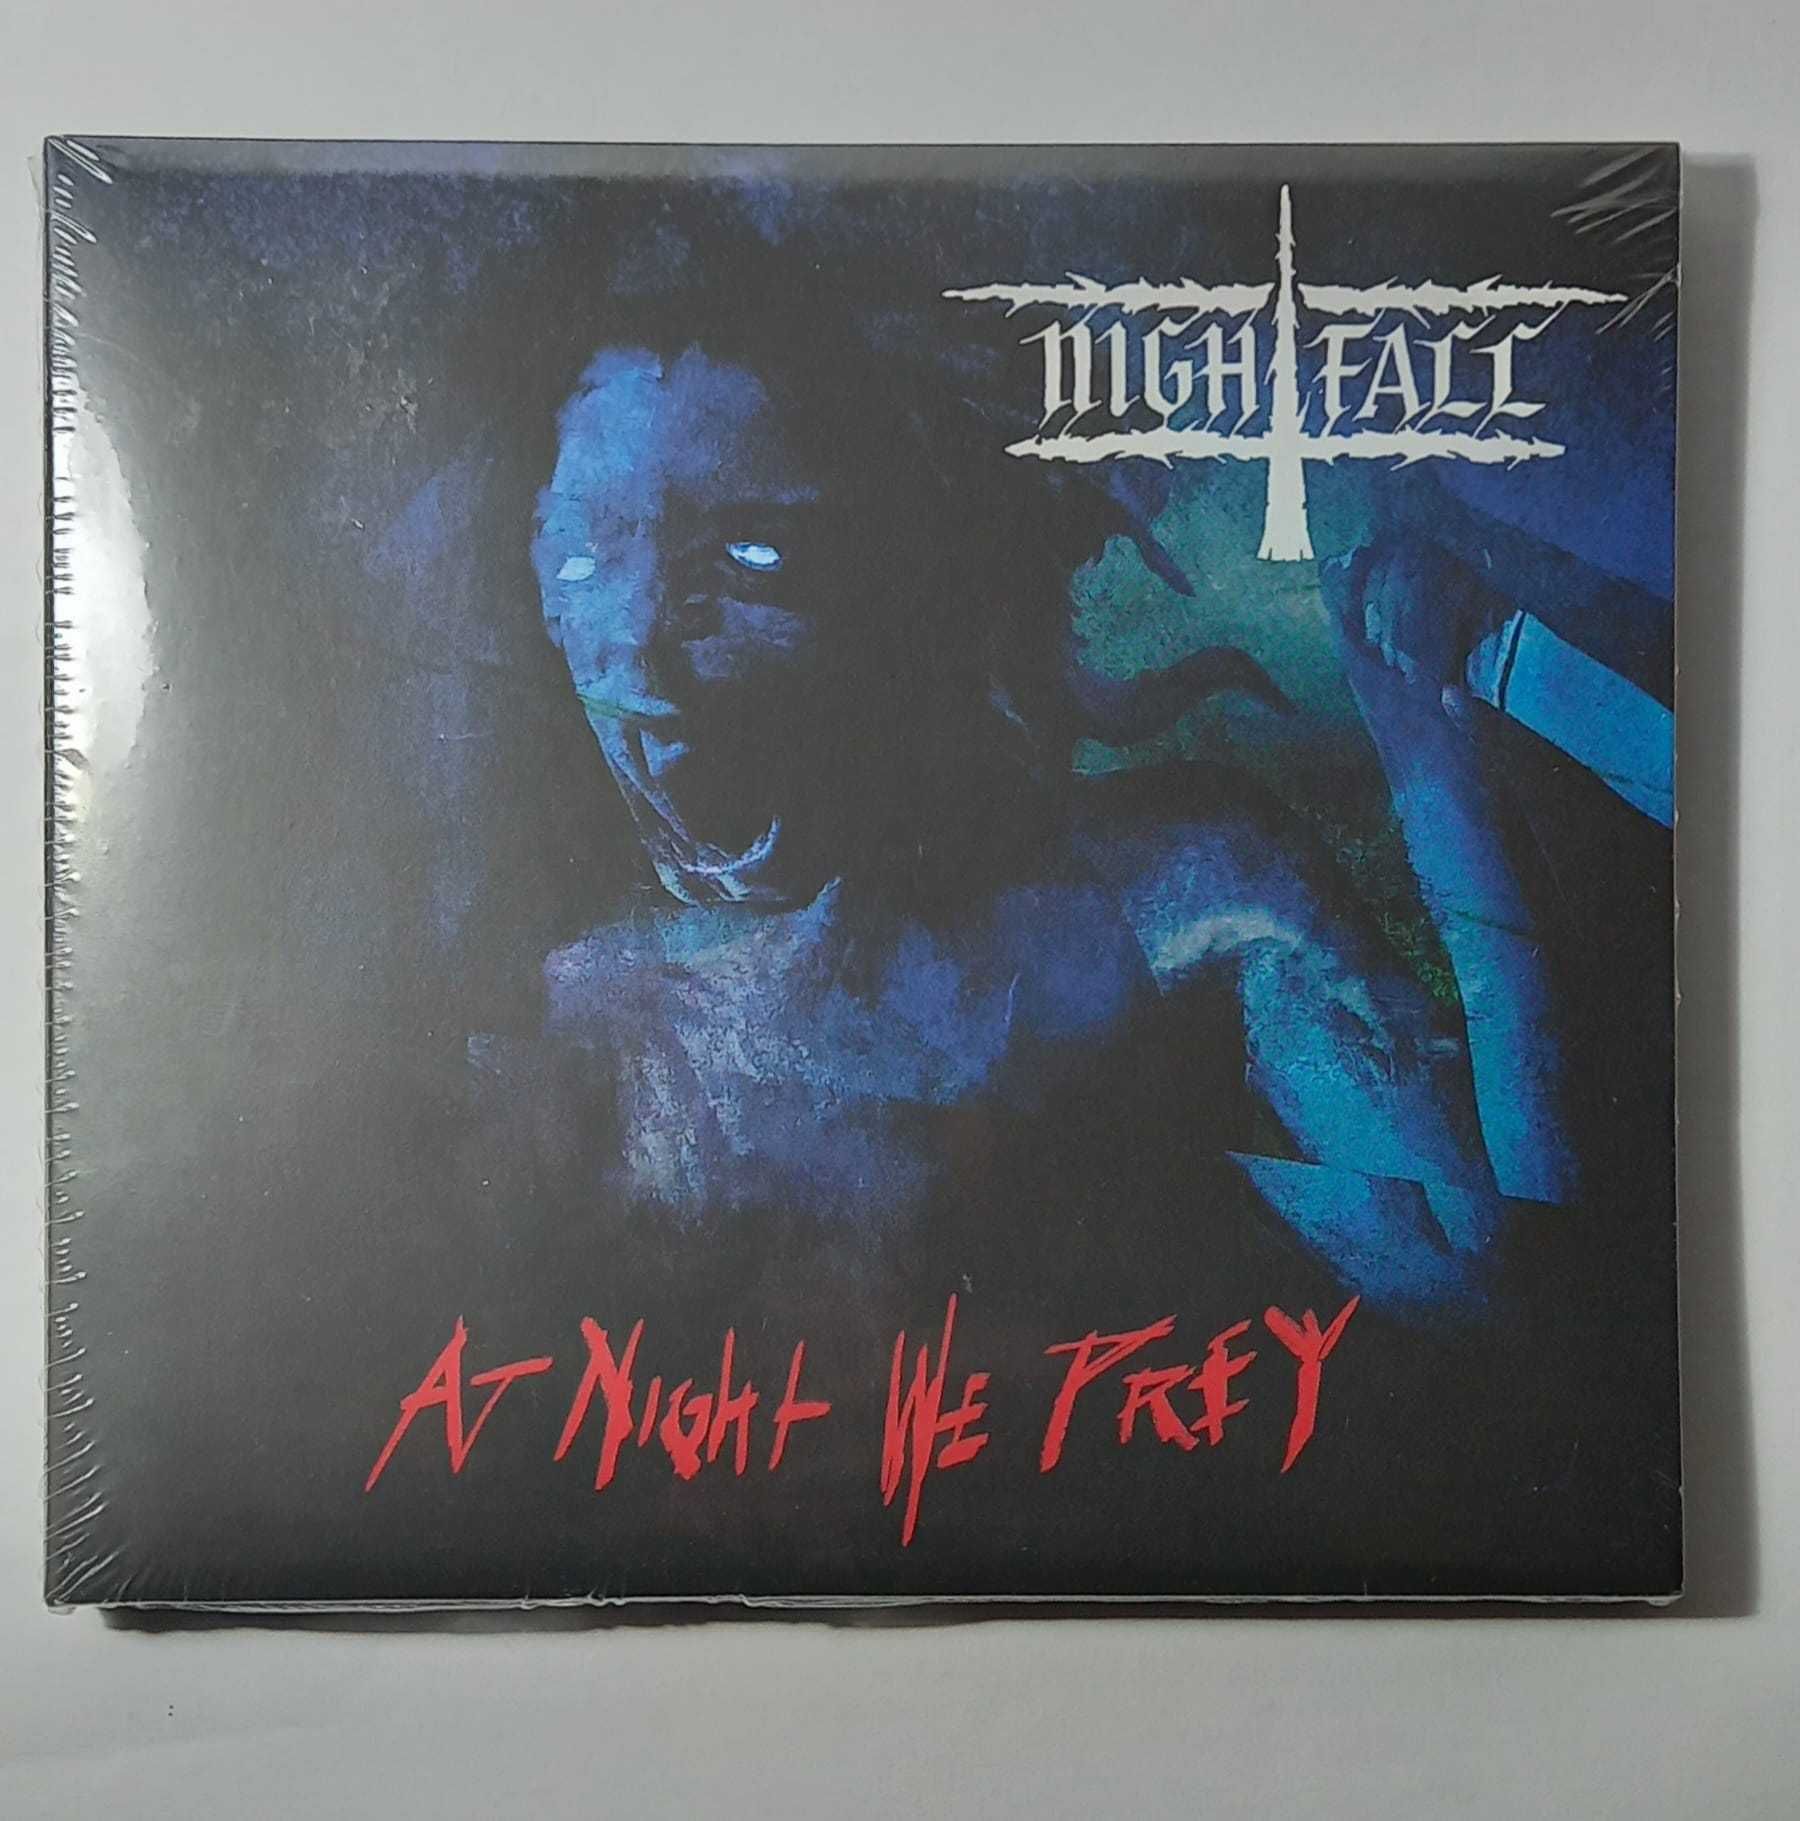 CD - Nightfall "At Night we Pray"